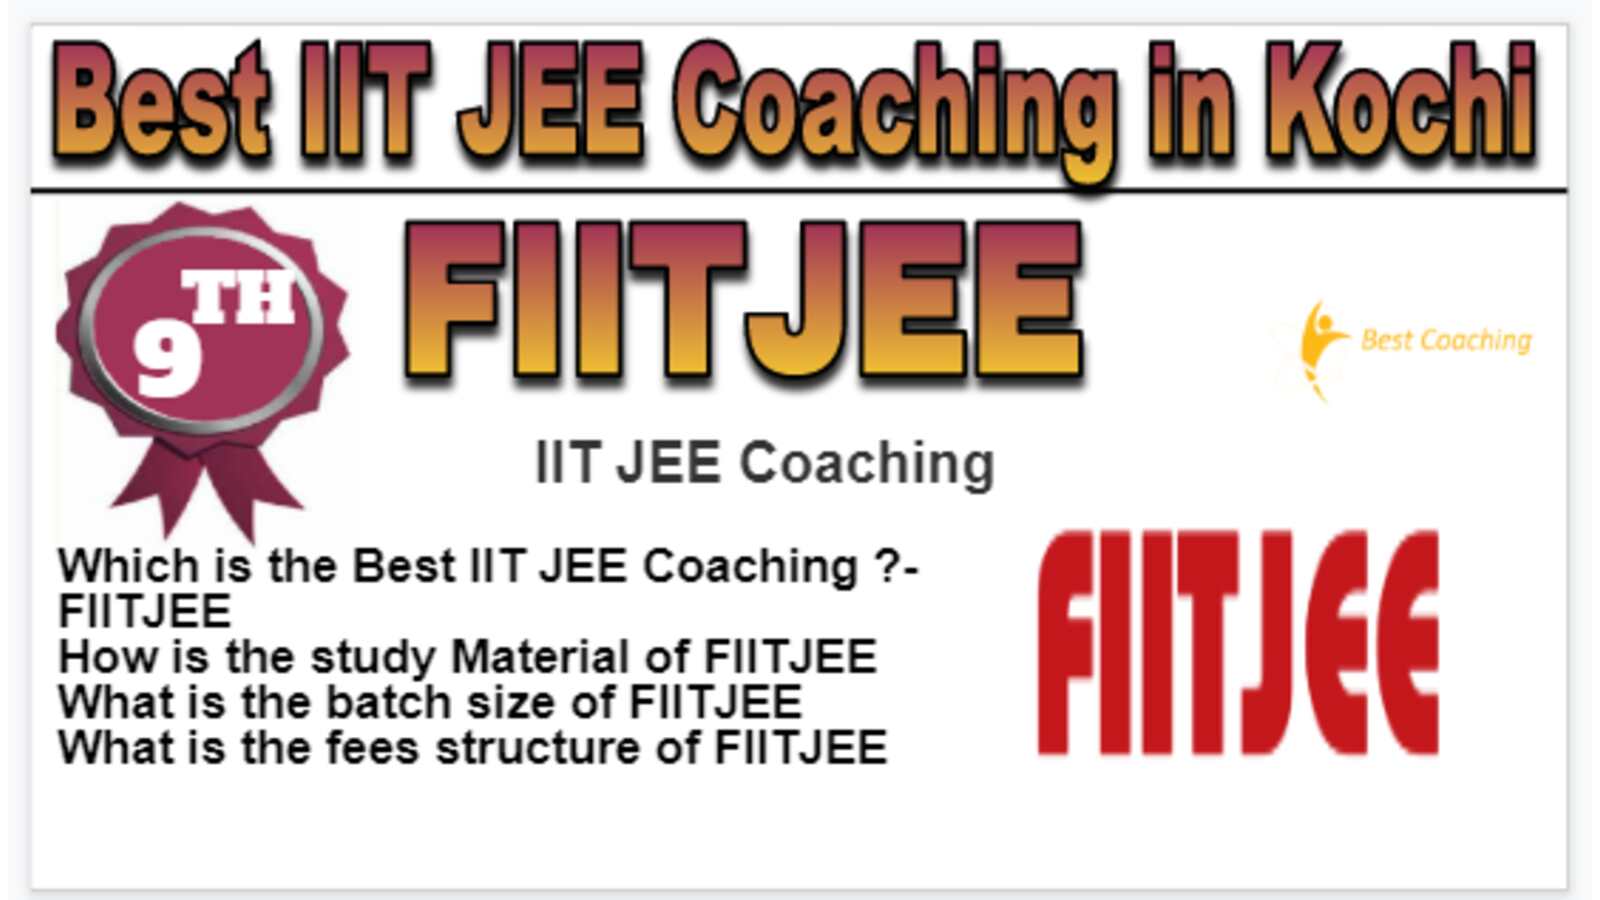 Rank 9 Best IIT JEE Coaching in Kochi